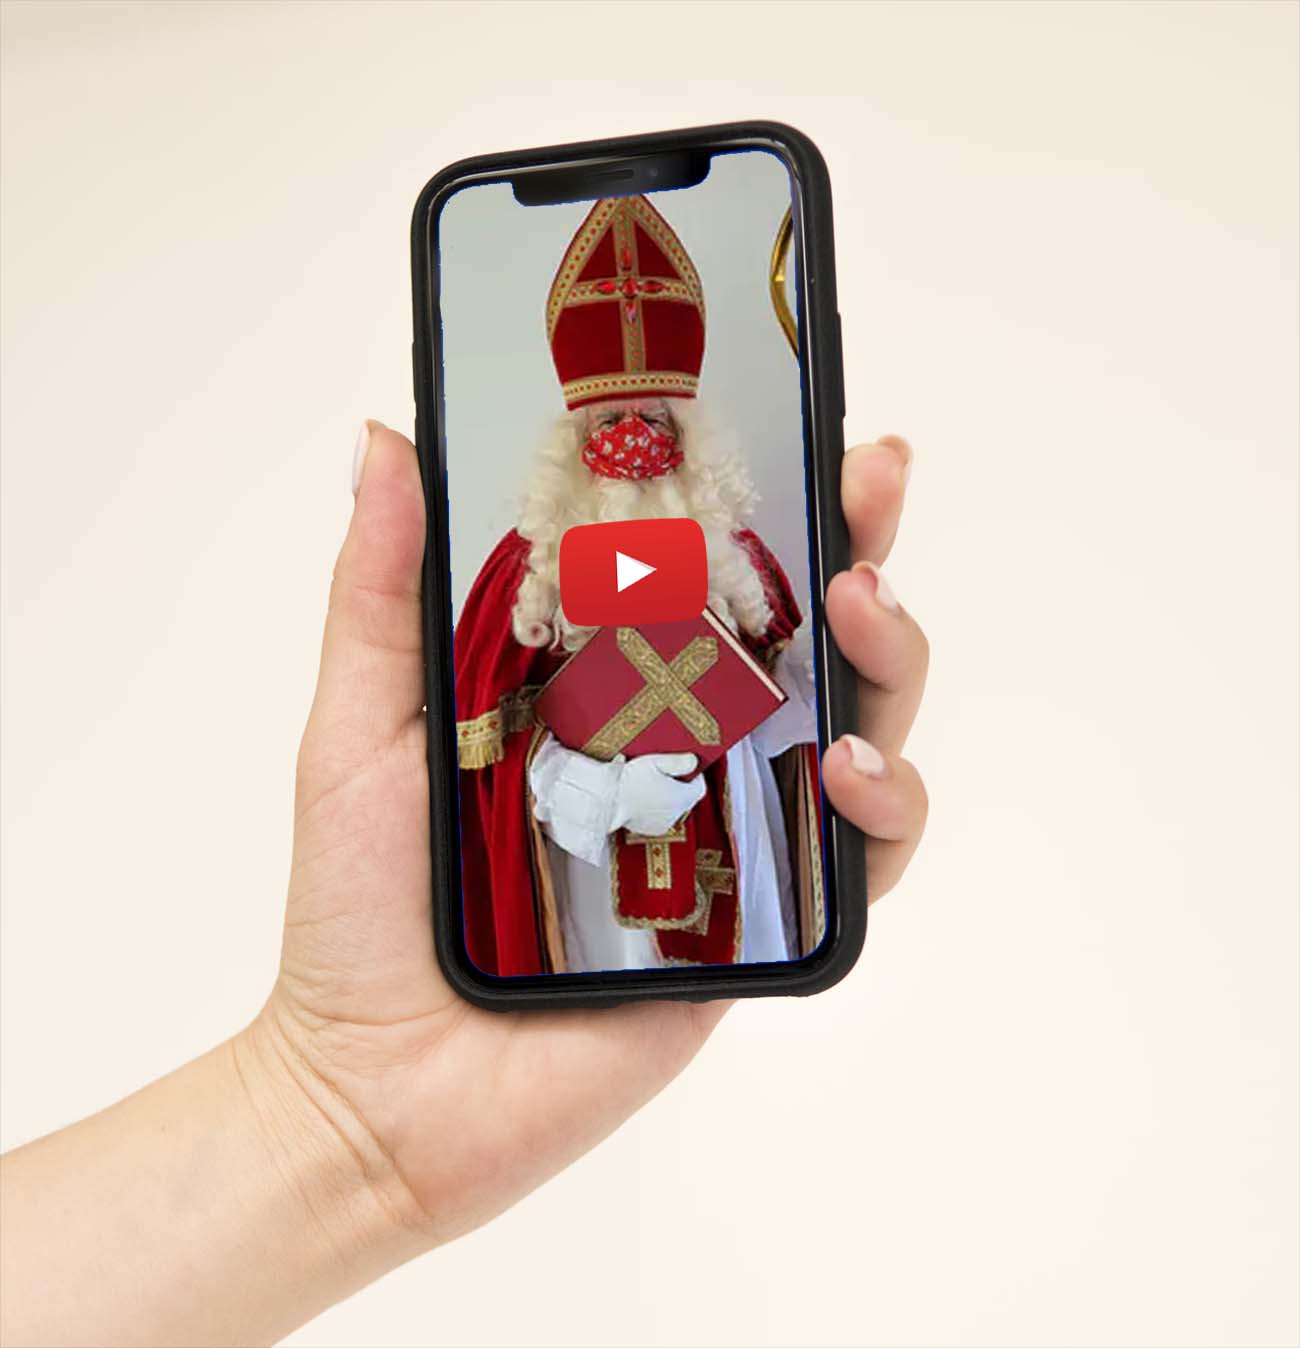 Bestel een persoonlijke videoboodschap van Sinterklaas